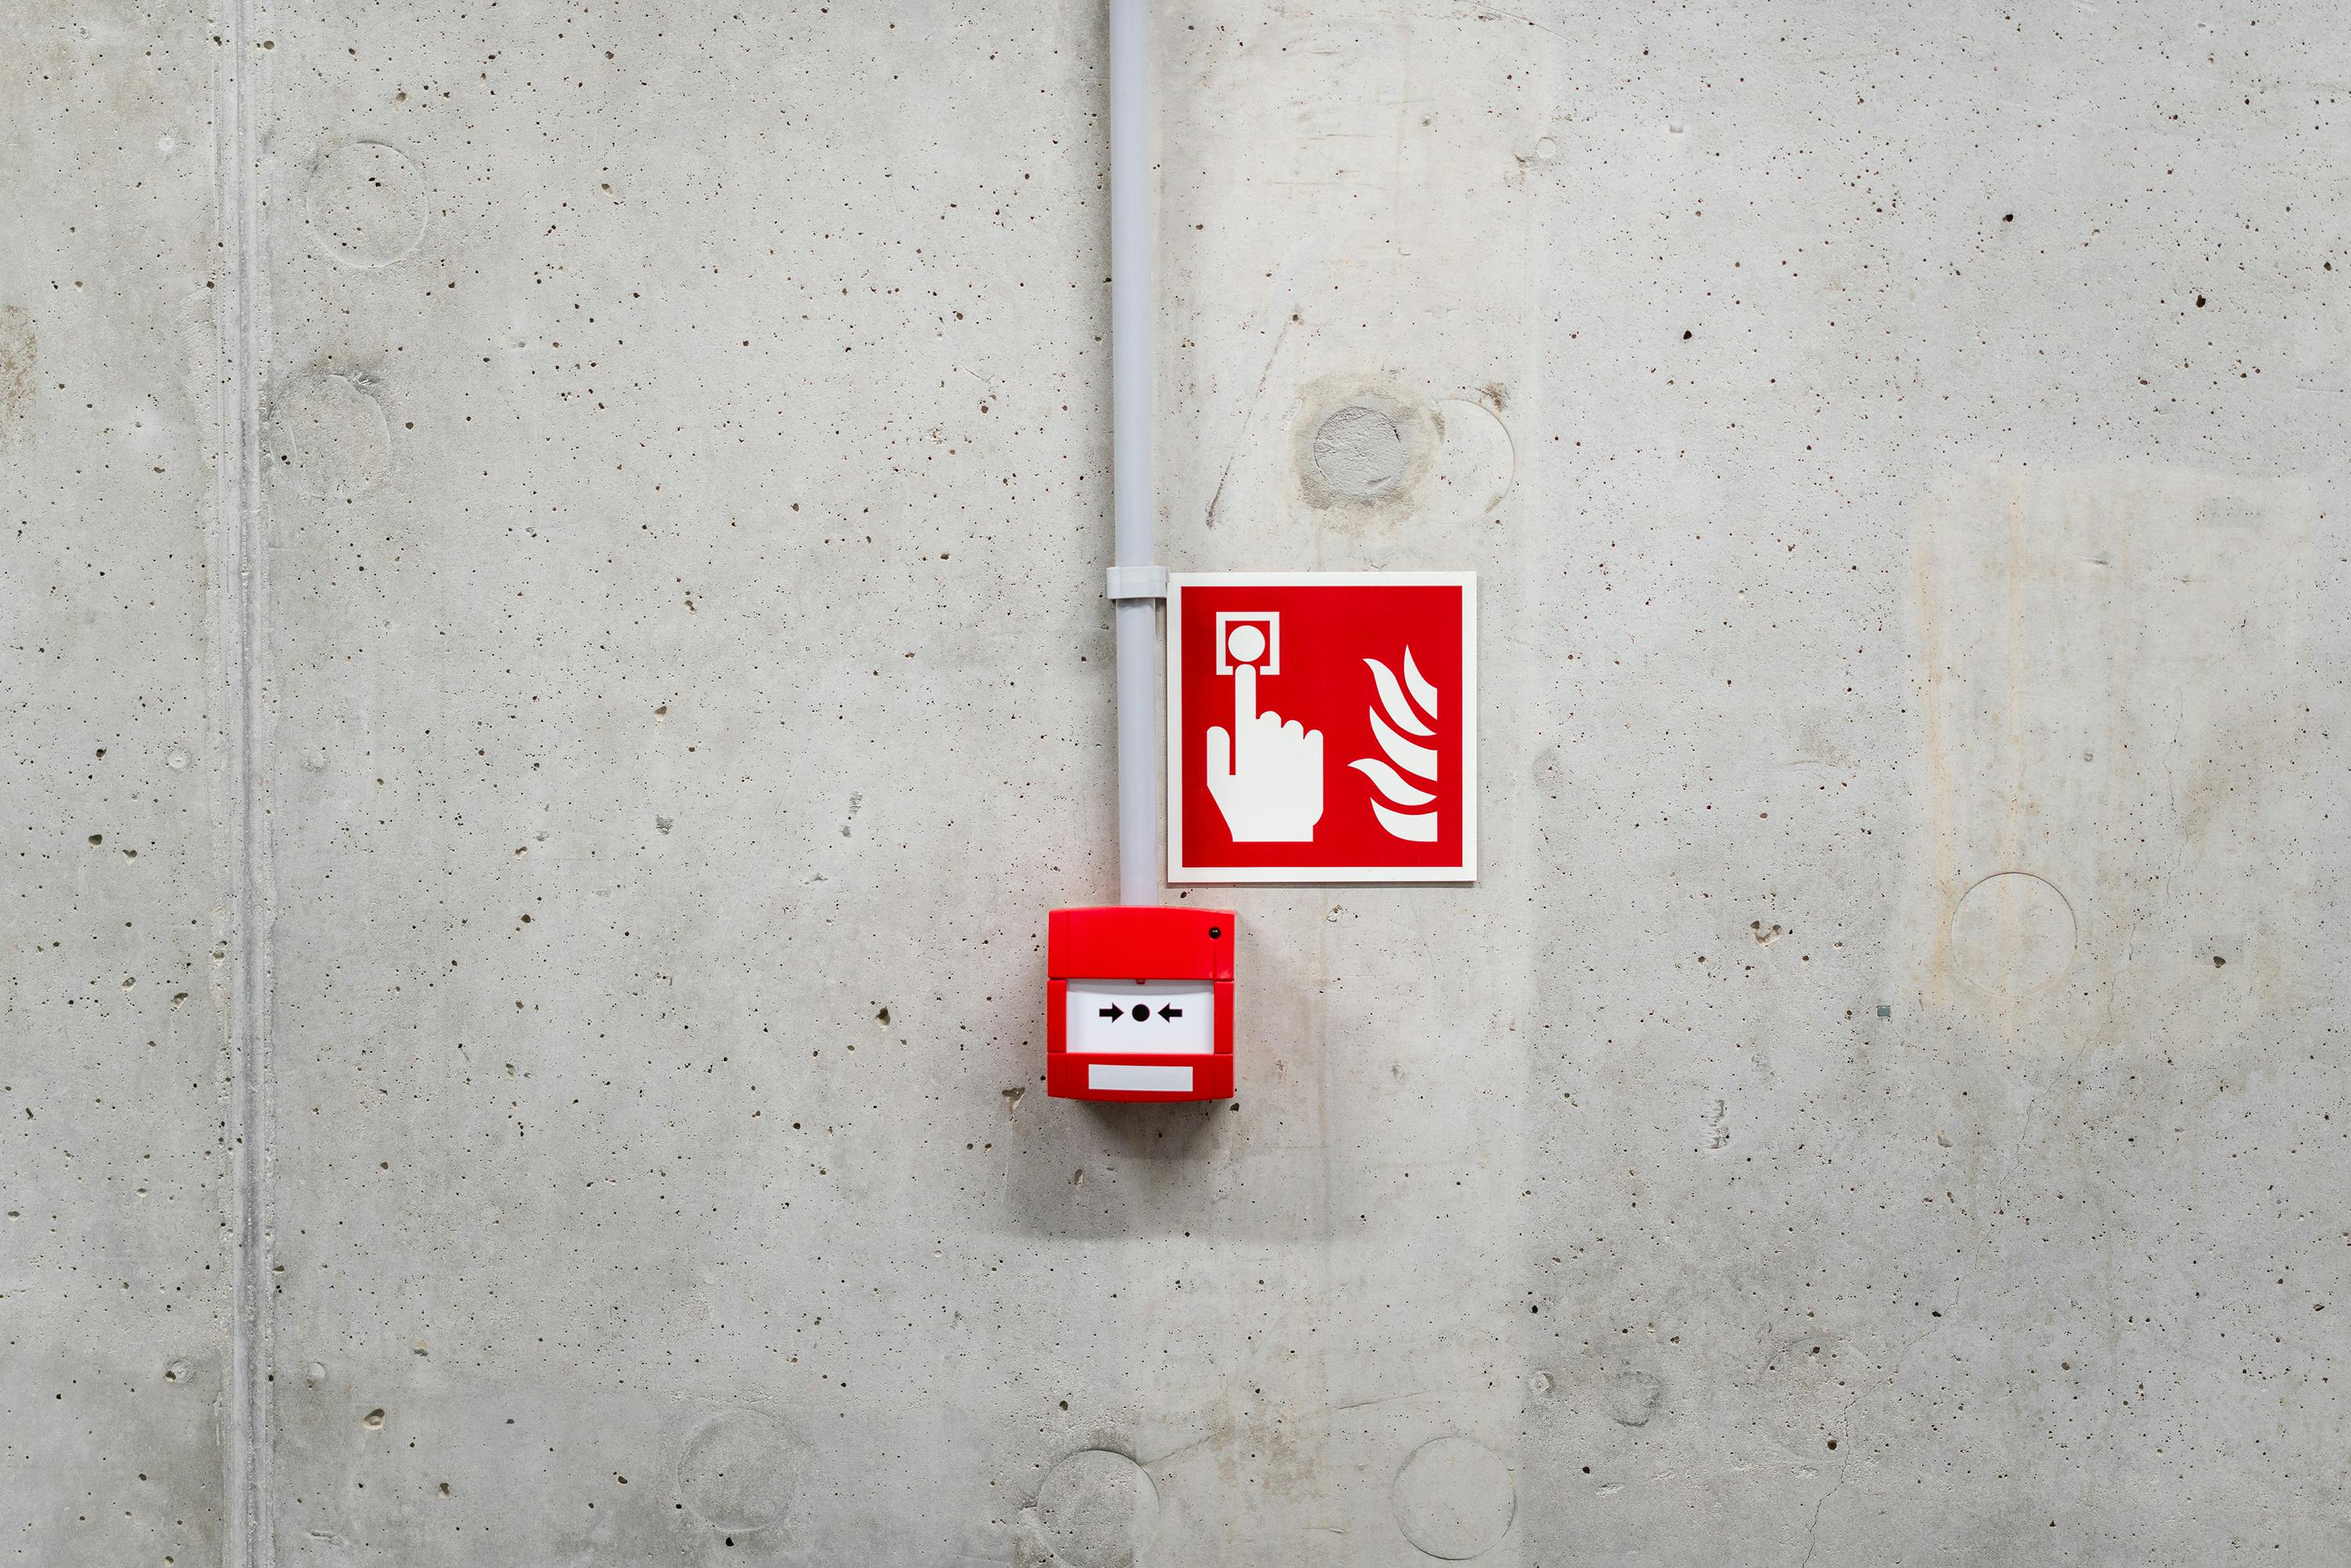 Emergency button by Jakub Zerdzicki